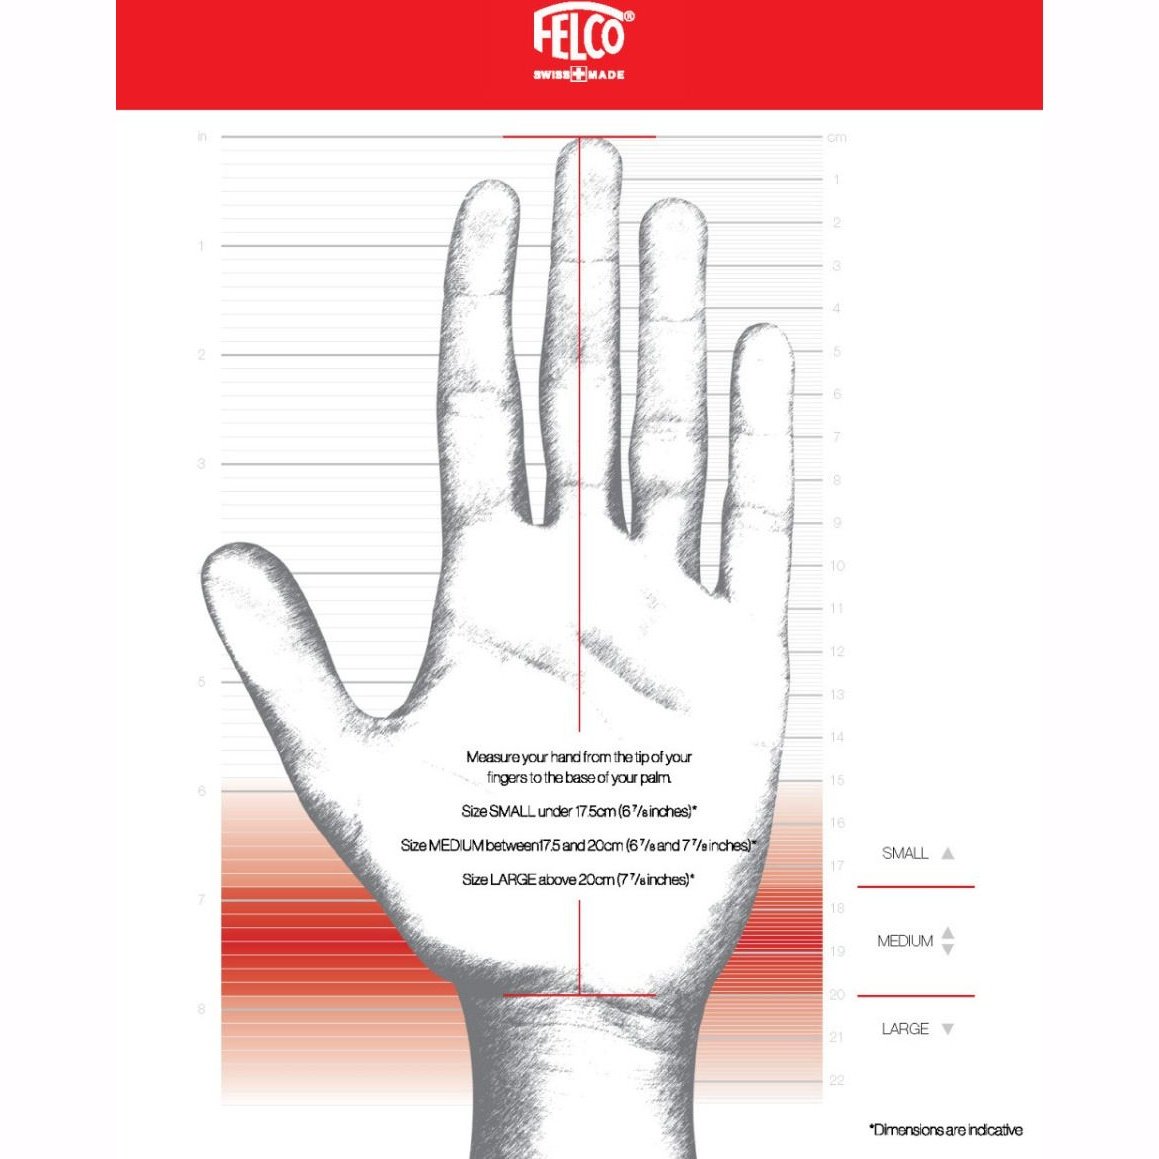 Felco 160L Model for Large Hands Pruner